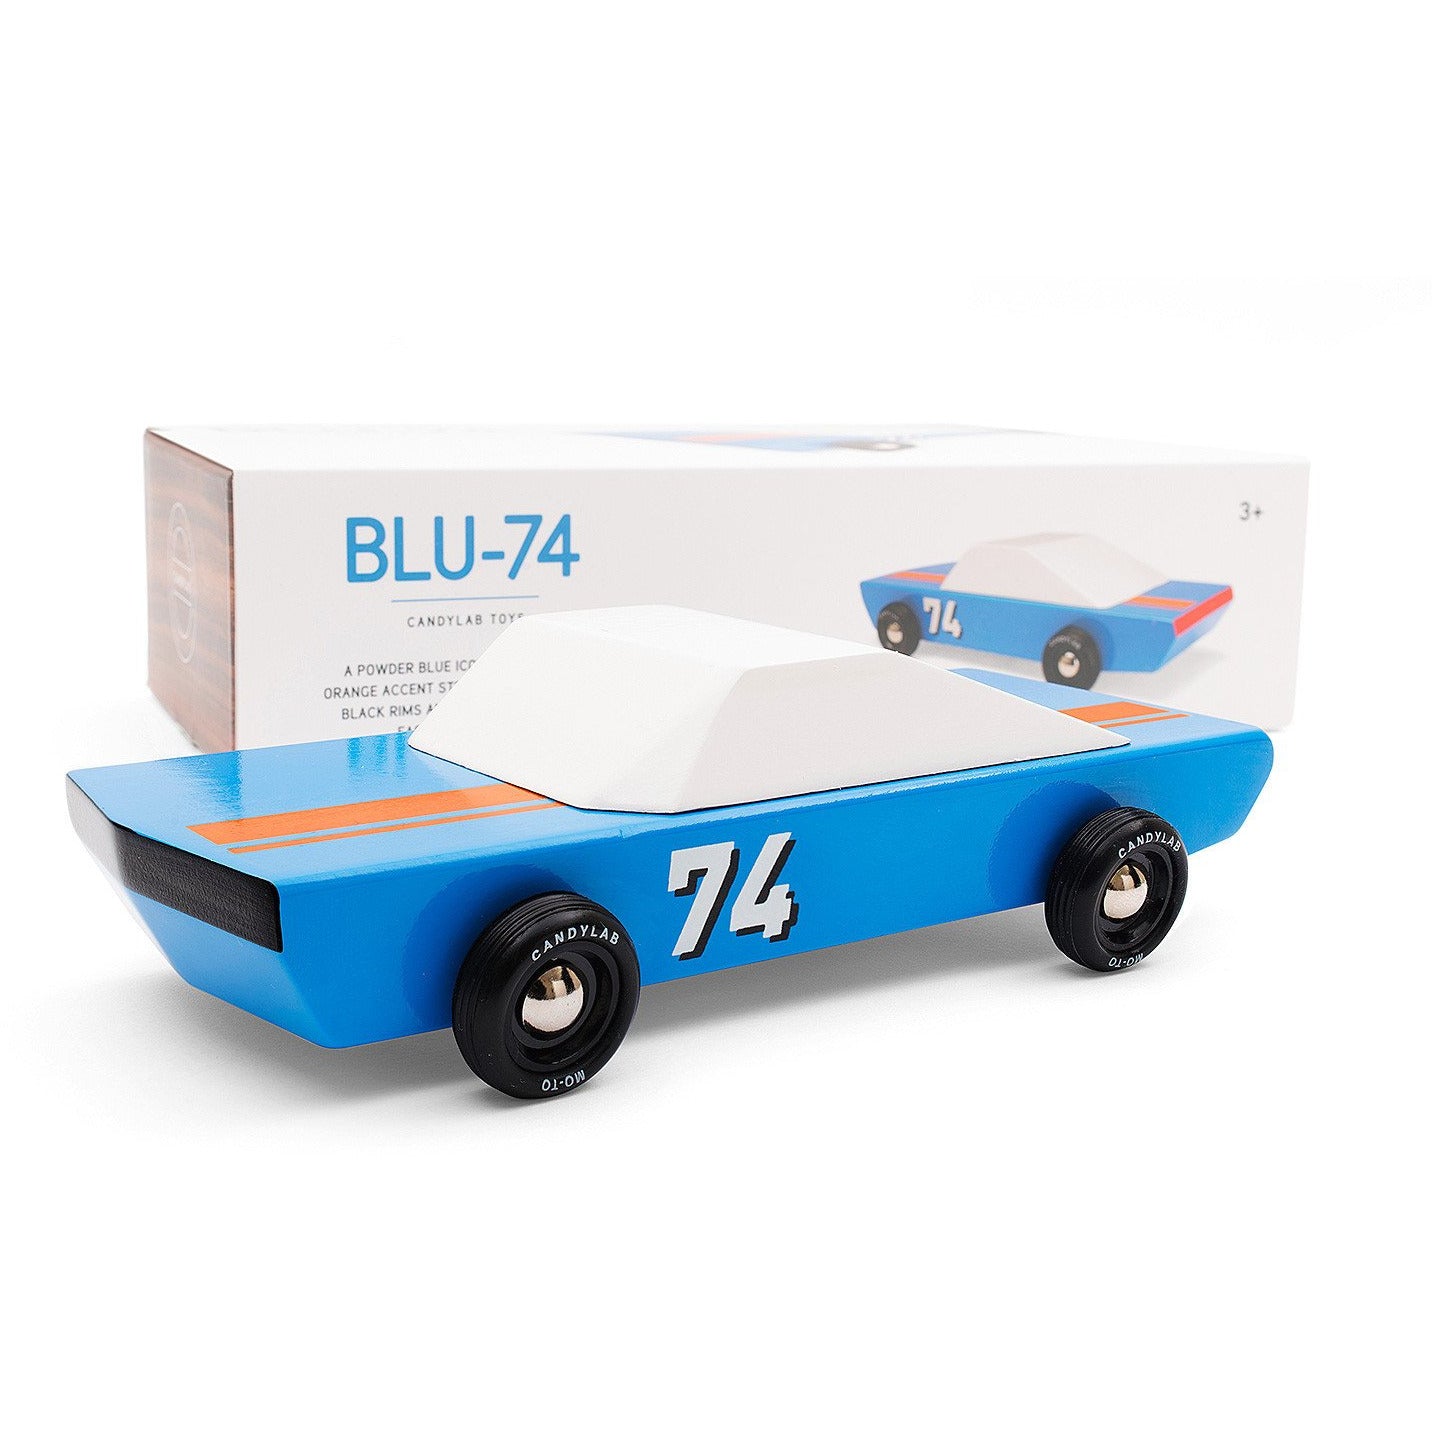 Blu-74 car